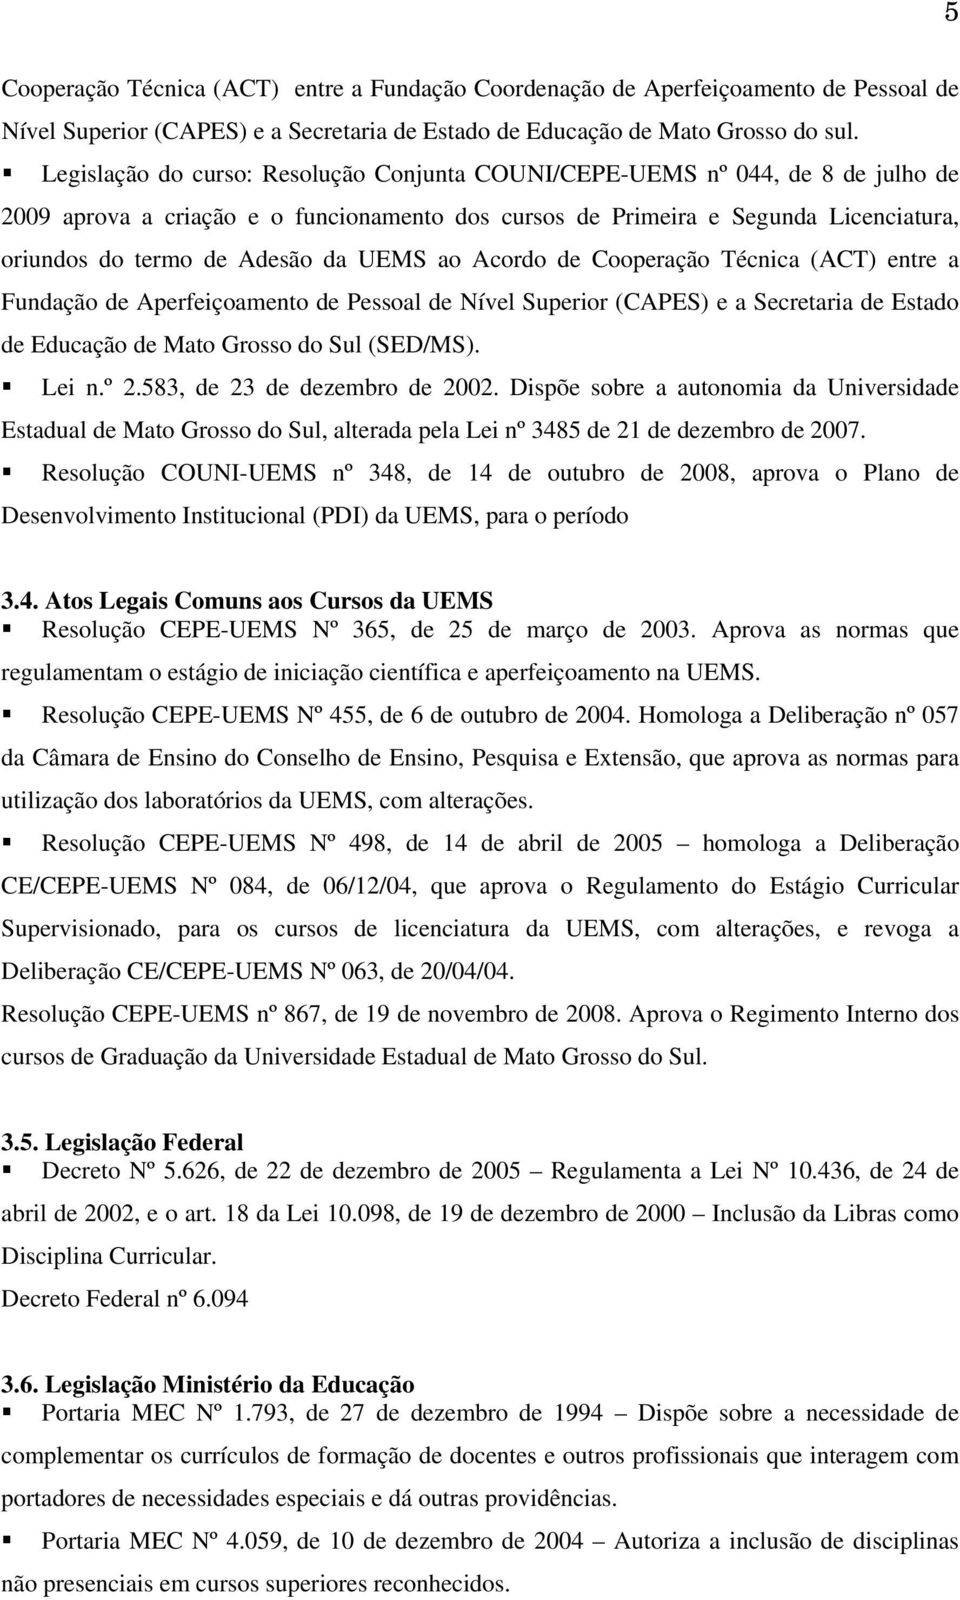 UEMS ao Acordo de Cooperação Técnica (ACT) entre a Fundação de Aperfeiçoamento de Pessoal de Nível Superior (CAPES) e a Secretaria de Estado de Educação de Mato Grosso do Sul (SED/MS). Lei n.º 2.